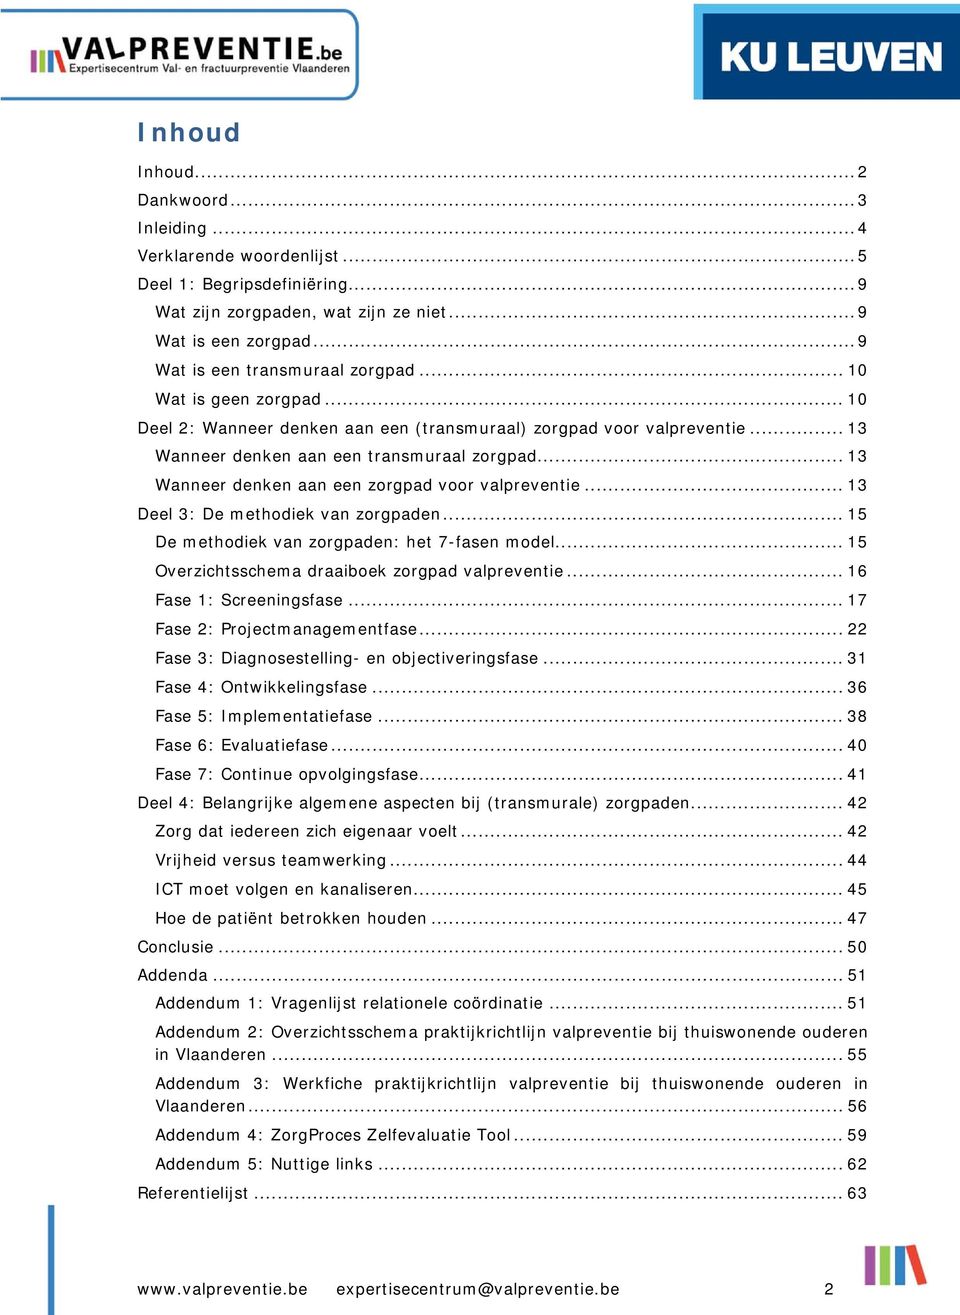 .. 13 Wanneer denken aan een zorgpad voor valpreventie... 13 Deel 3: De methodiek van zorgpaden... 15 De methodiek van zorgpaden: het 7-fasen model... 15 Overzichtsschema draaiboek zorgpad valpreventie.